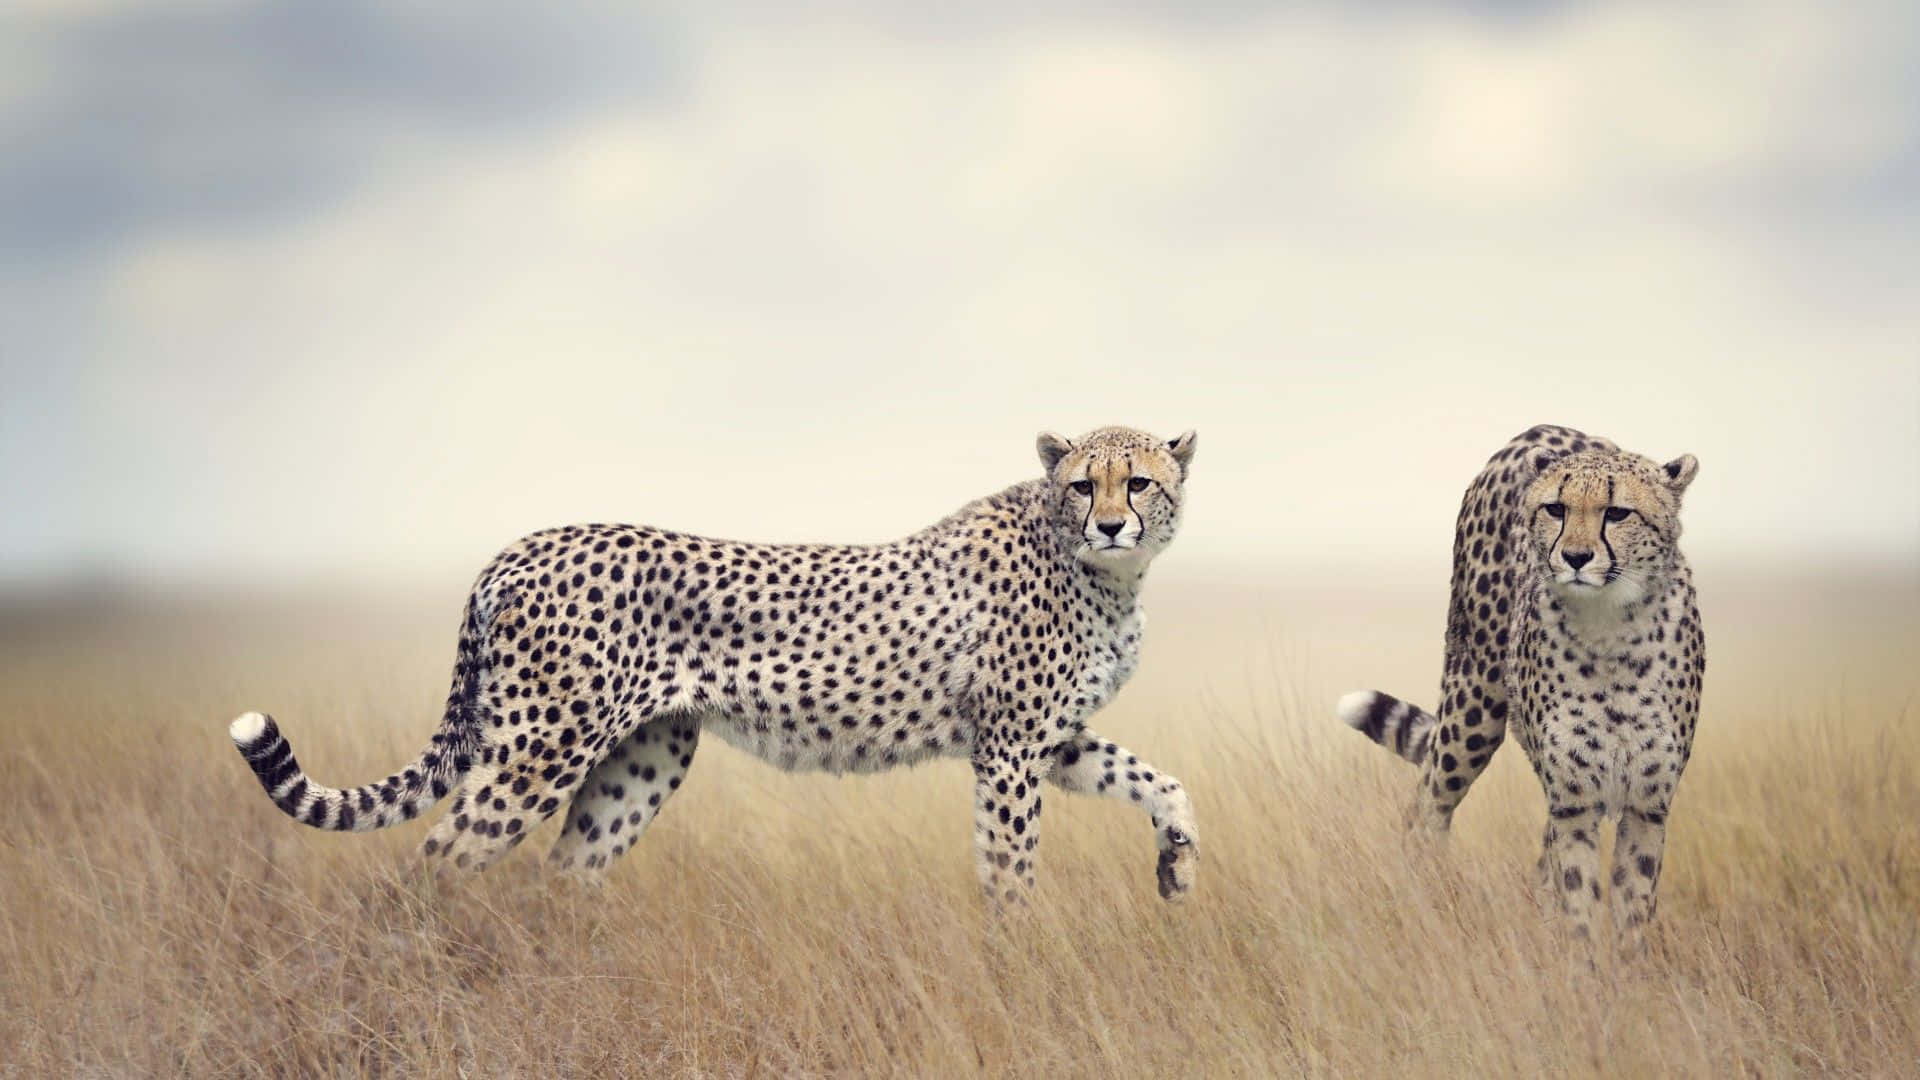 Cheetah Prowling Through Savannah